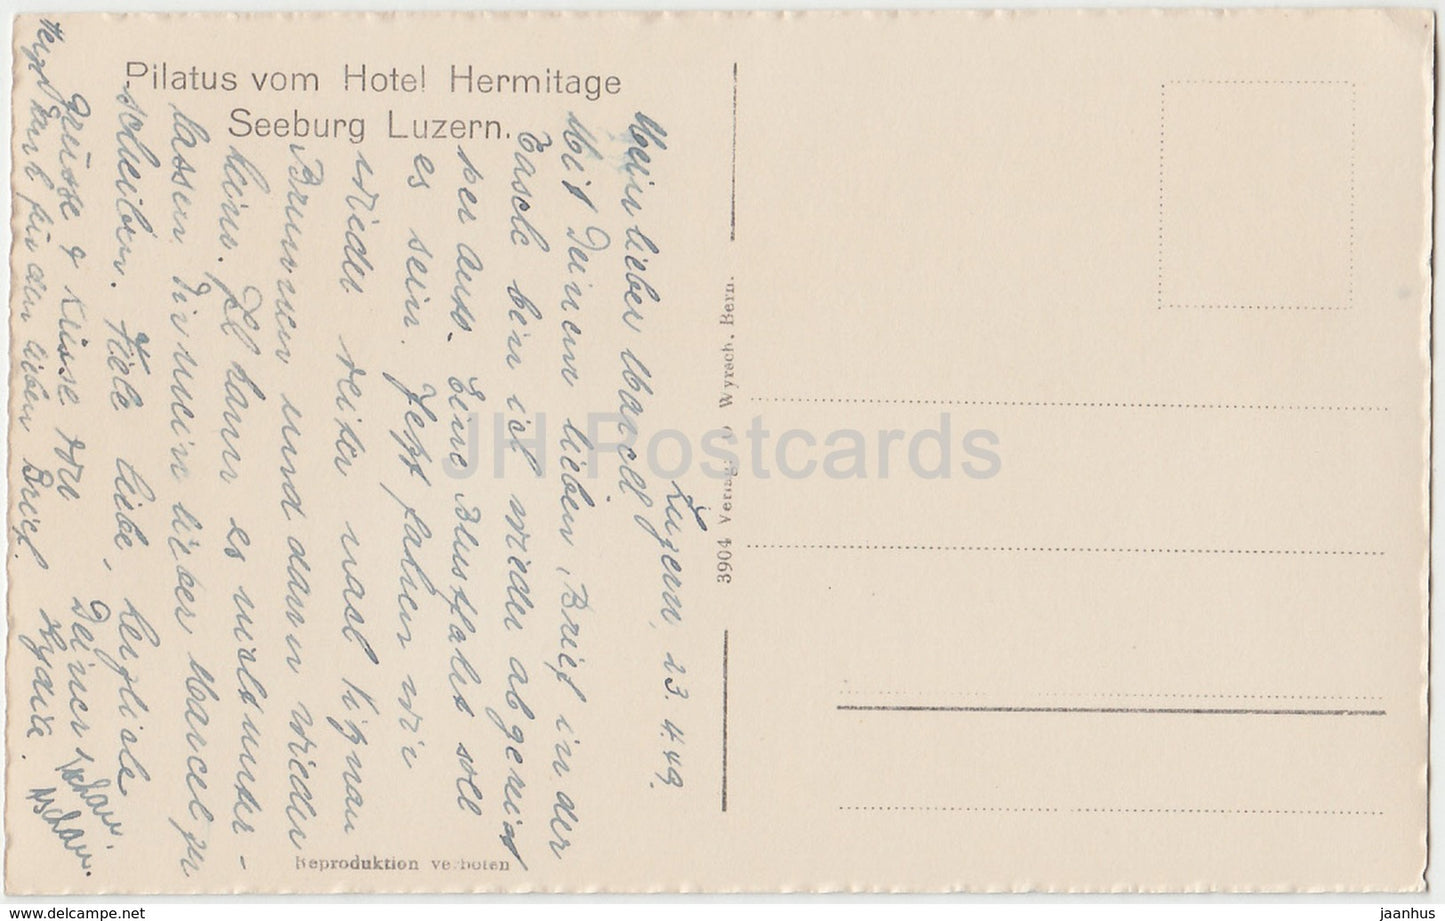 Pilatus vom Hotel Hermitage - Seeburg Luzern - 3904 - Switzerland - 1949 - used